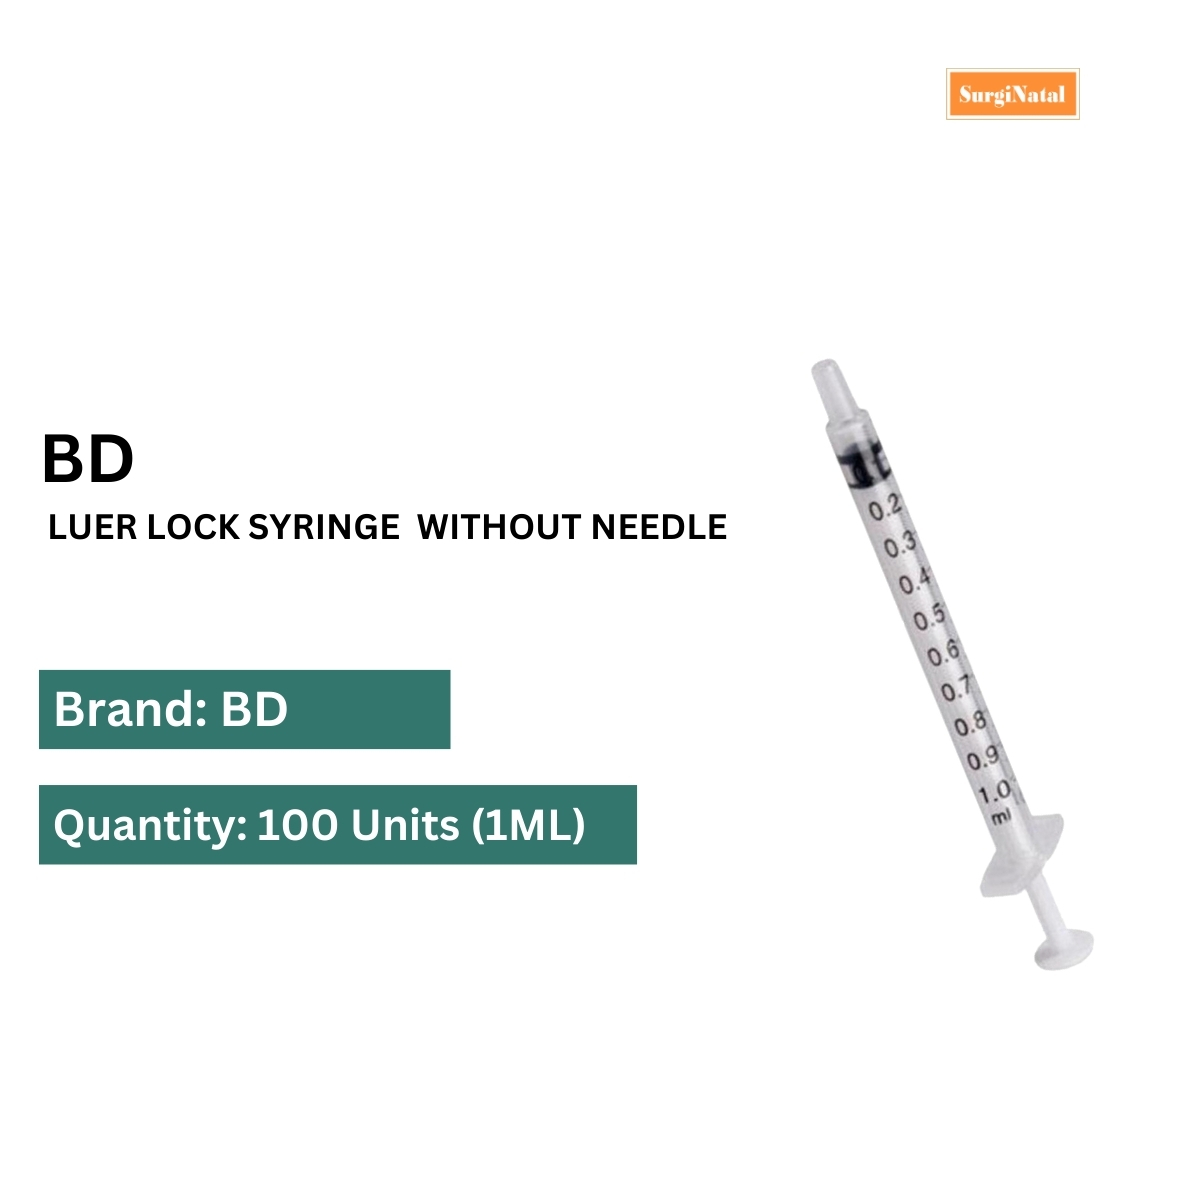 bd syringe 1ml luer lock without needle-100 pcs box